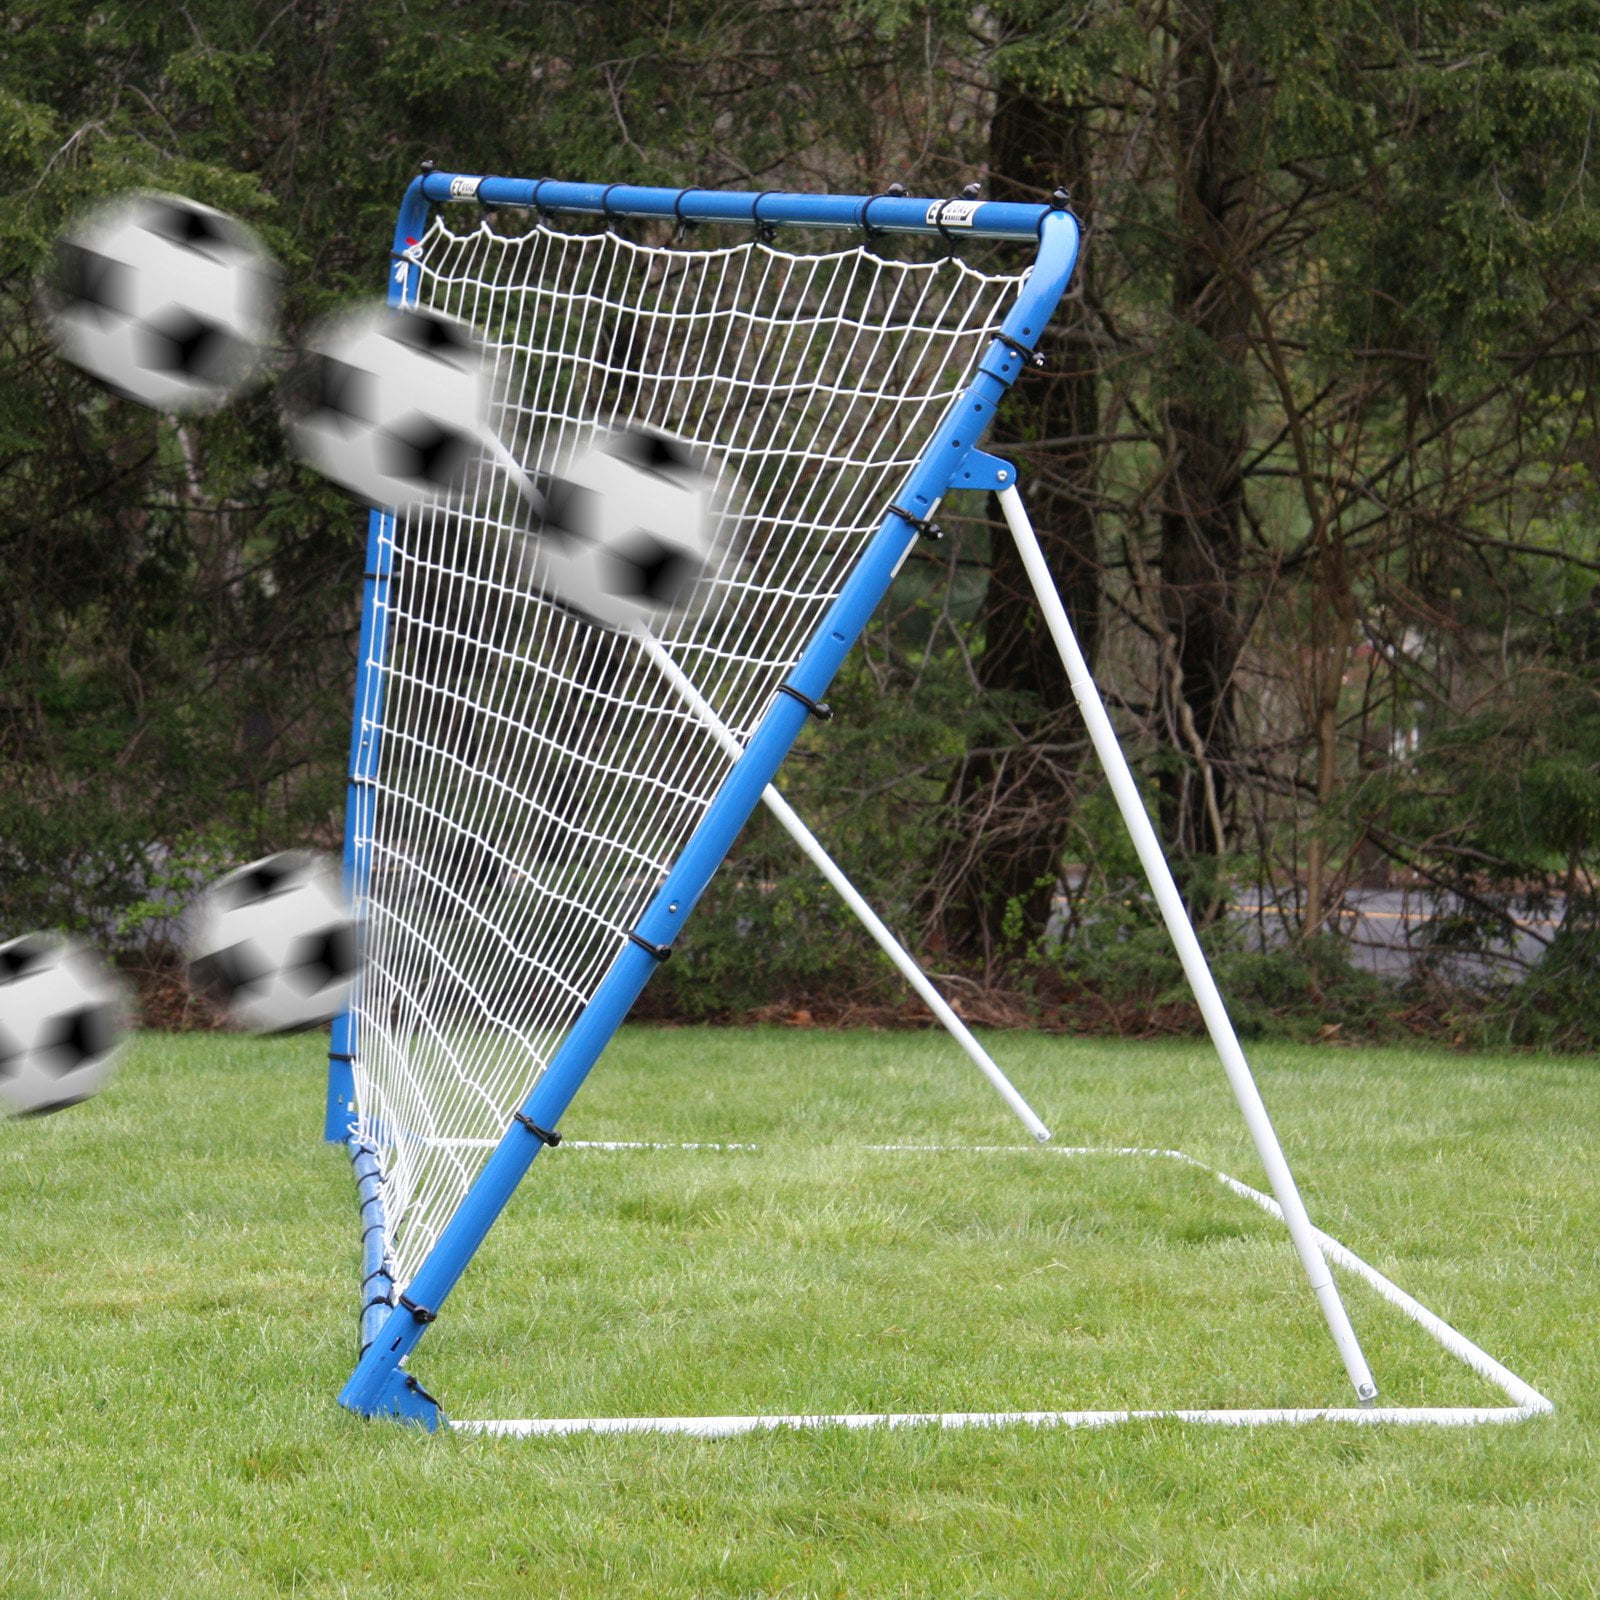 Child Football Training Adjustable Pro Rebounder Net Kickback Soccer Target Goal 